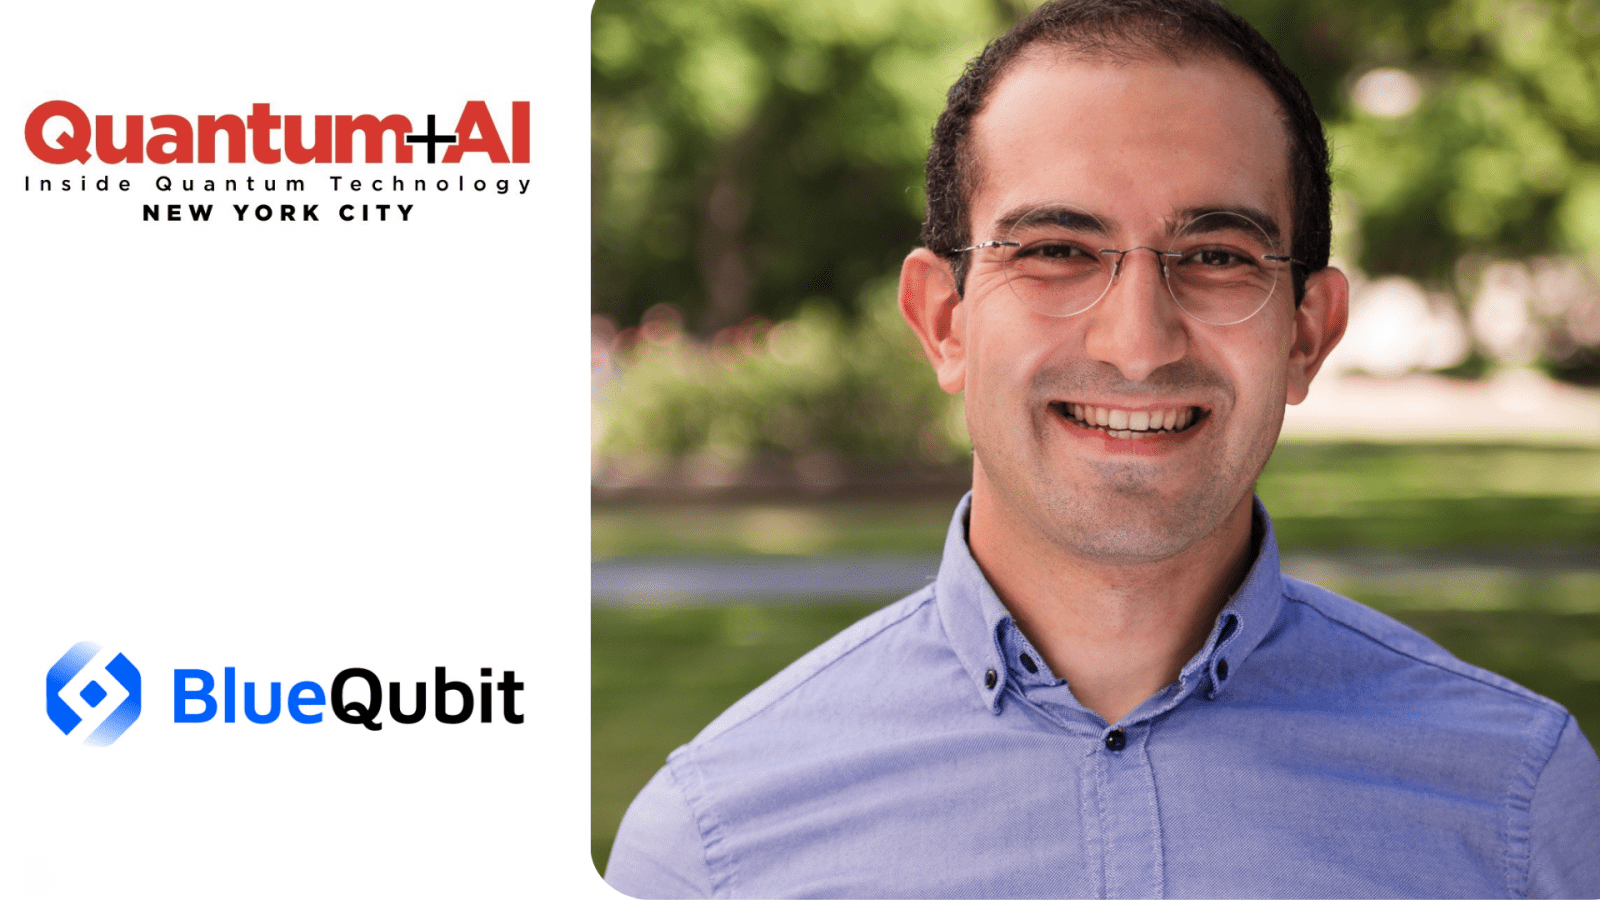 Hrant Gharibyan, izvršni direktor in soustanovitelj BlueQubit, je leta 2024 govornik na konferenci IQT Quantum plus AI v New Yorku